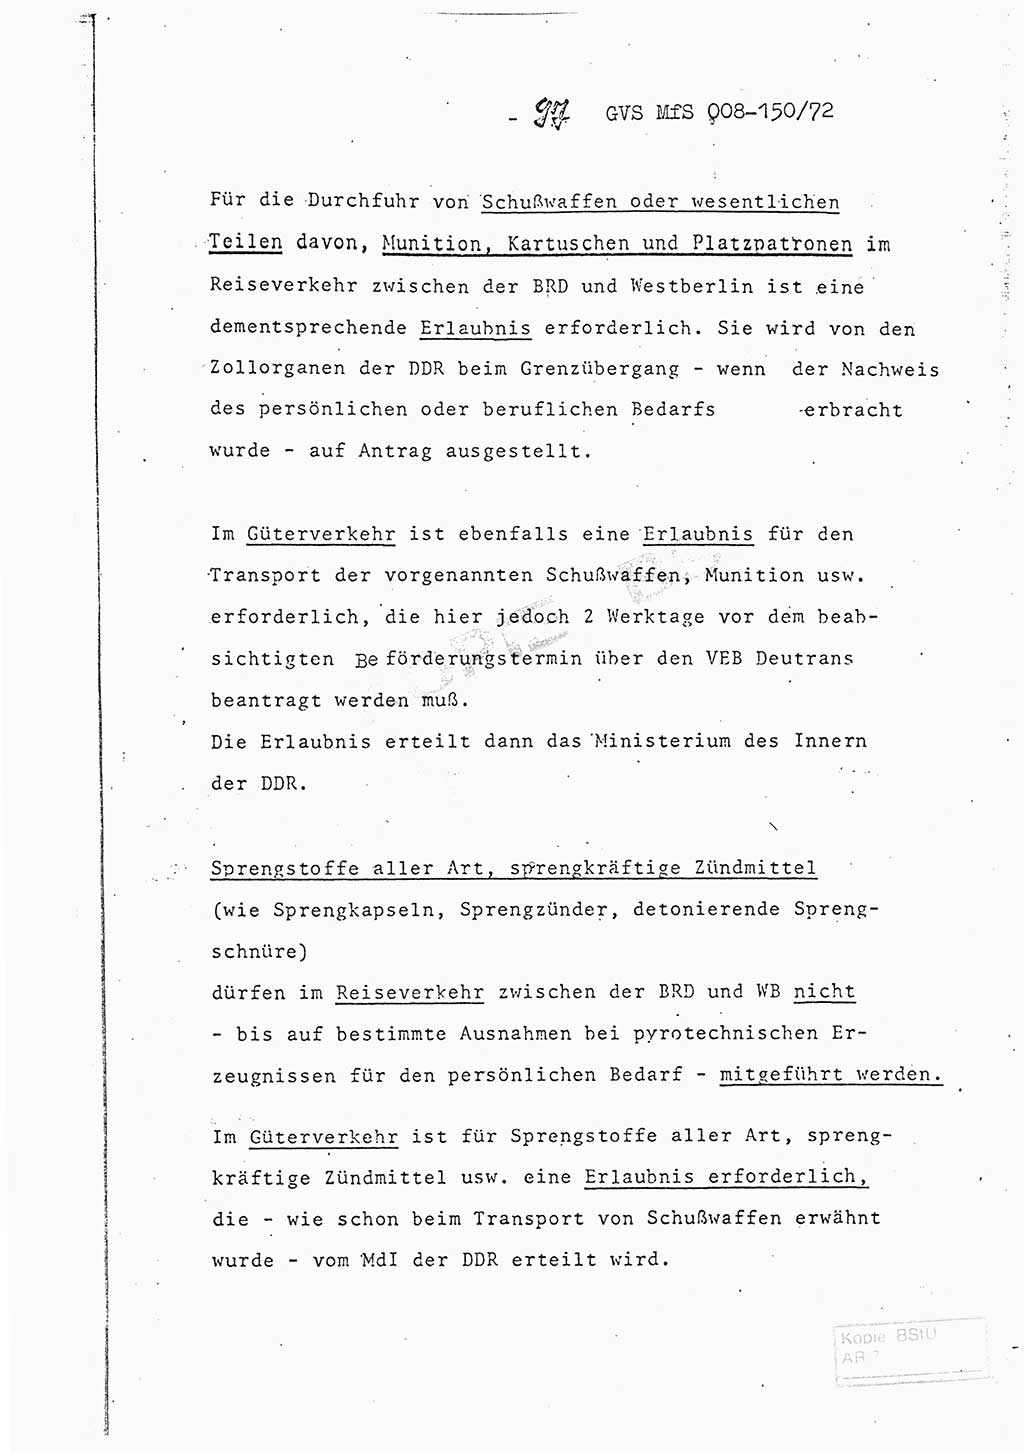 Referat (Entwurf) des Genossen Minister (Generaloberst Erich Mielke) auf der Dienstkonferenz 1972, Ministerium für Staatssicherheit (MfS) [Deutsche Demokratische Republik (DDR)], Der Minister, Geheime Verschlußsache (GVS) 008-150/72, Berlin 25.2.1972, Seite 97 (Ref. Entw. DK MfS DDR Min. GVS 008-150/72 1972, S. 97)